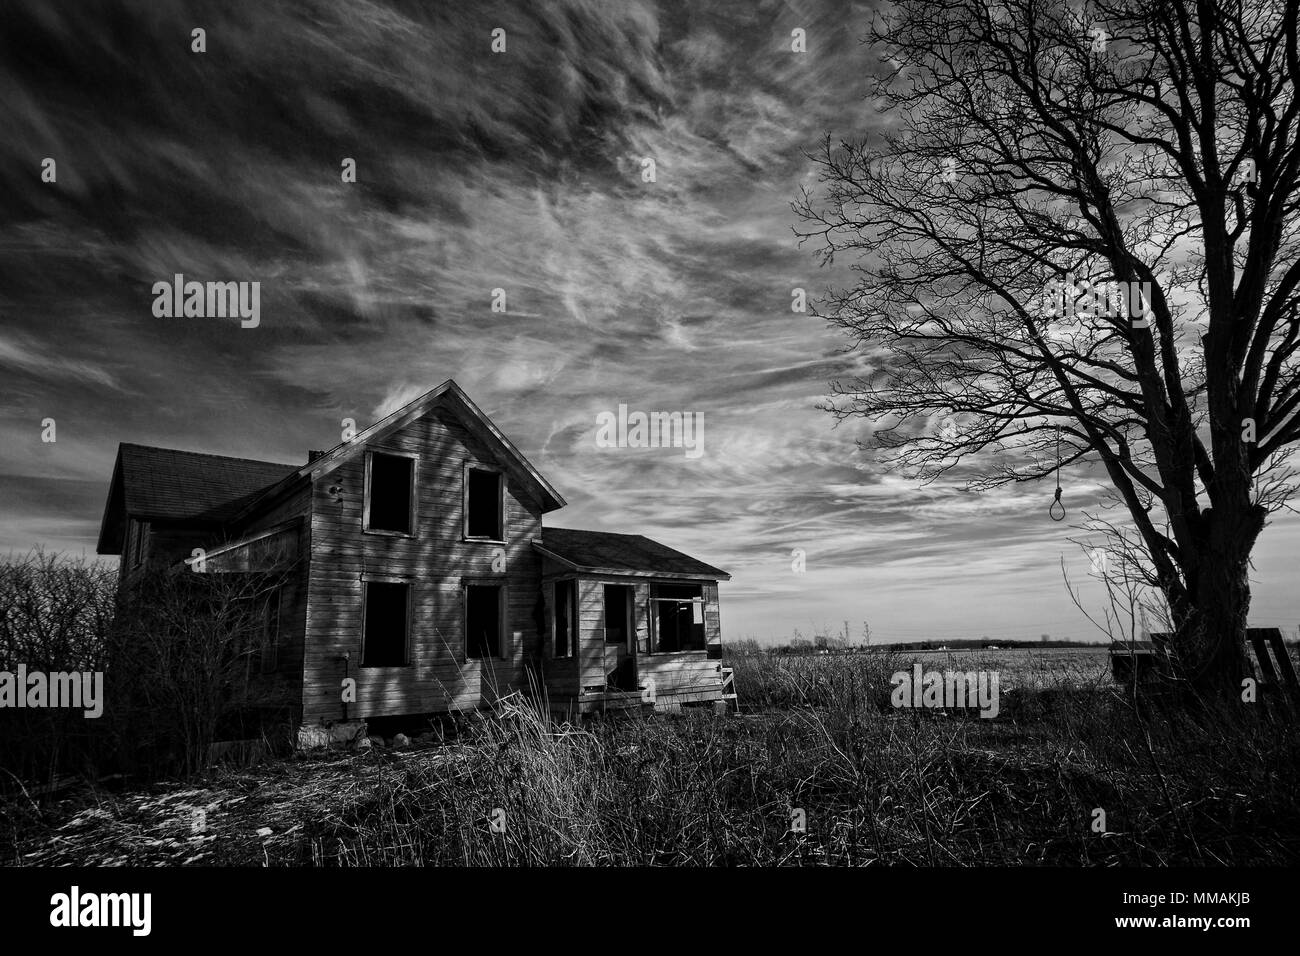 Foto in bianco e nero di un vecchio scary fattoria abbandonata che sta peggiorando con il tempo con un vecchio albero e un impiccato il cappio. Foto Stock